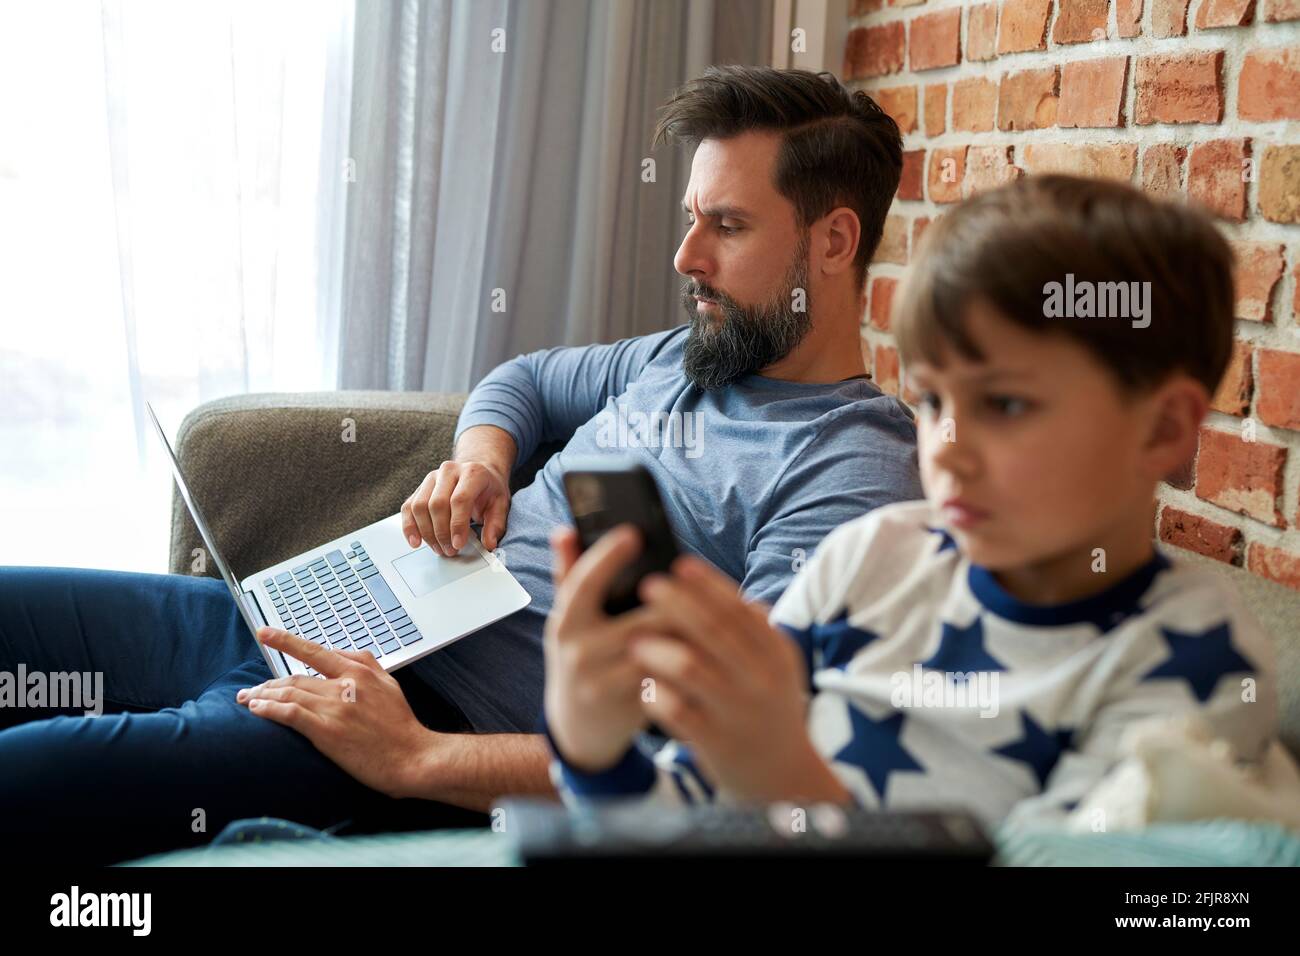 Padre trabajando en el ordenador portátil y su hijo usando el teléfono móvil Foto de stock